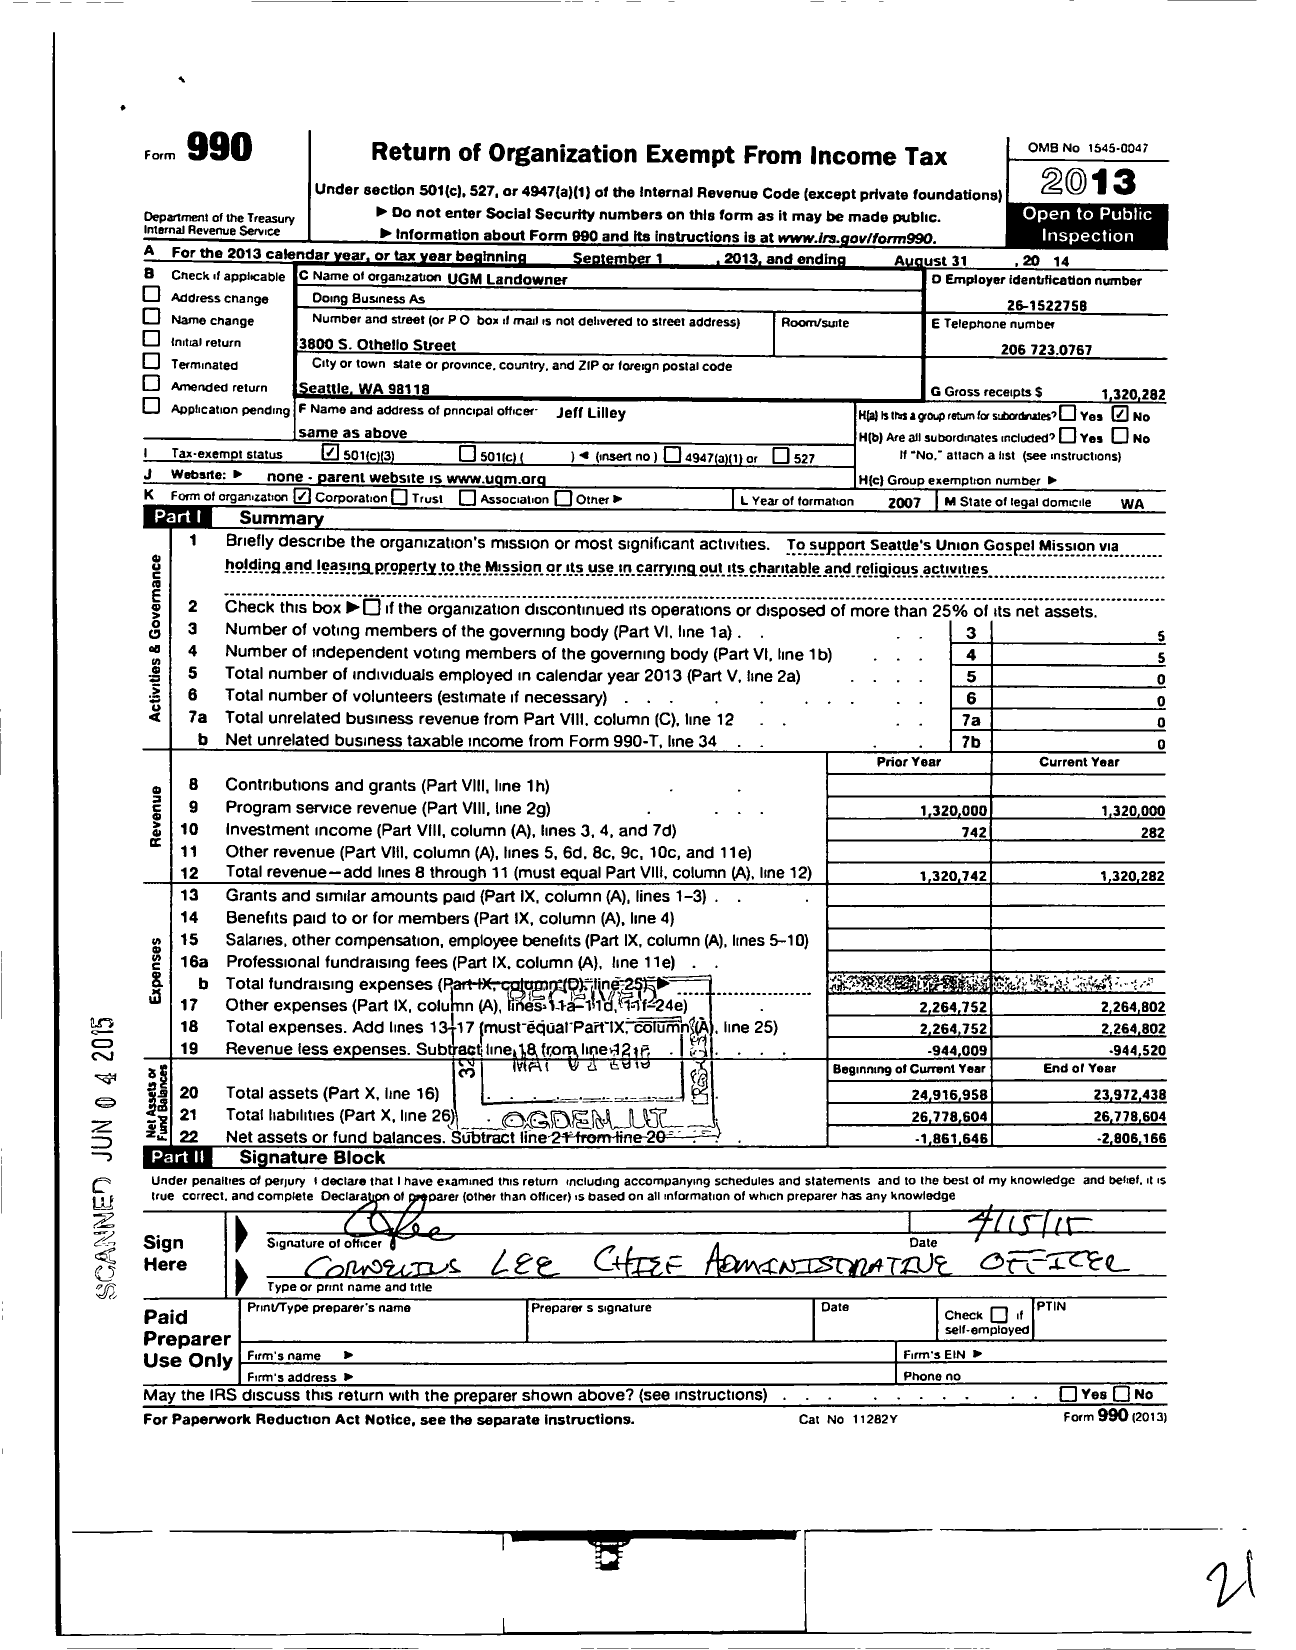 Image of first page of 2013 Form 990 for Ugm Landowner